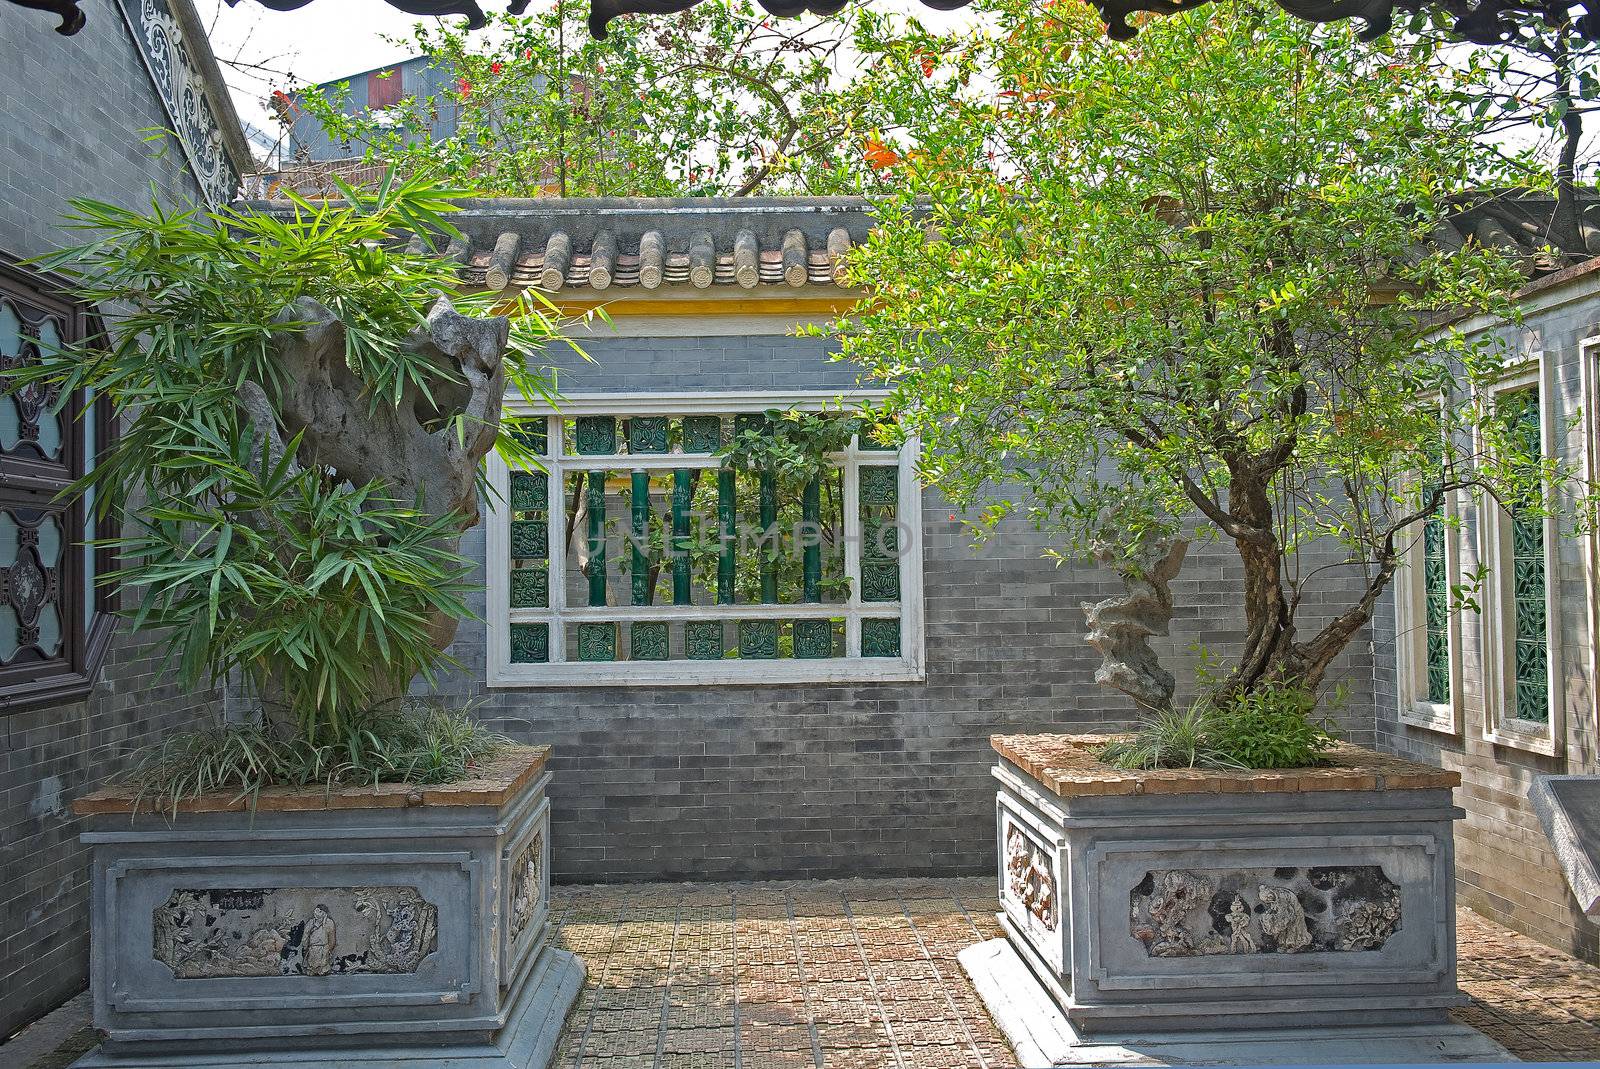 Potted plants, Qinghui garden in Shunde, Foshan, Guangdong China